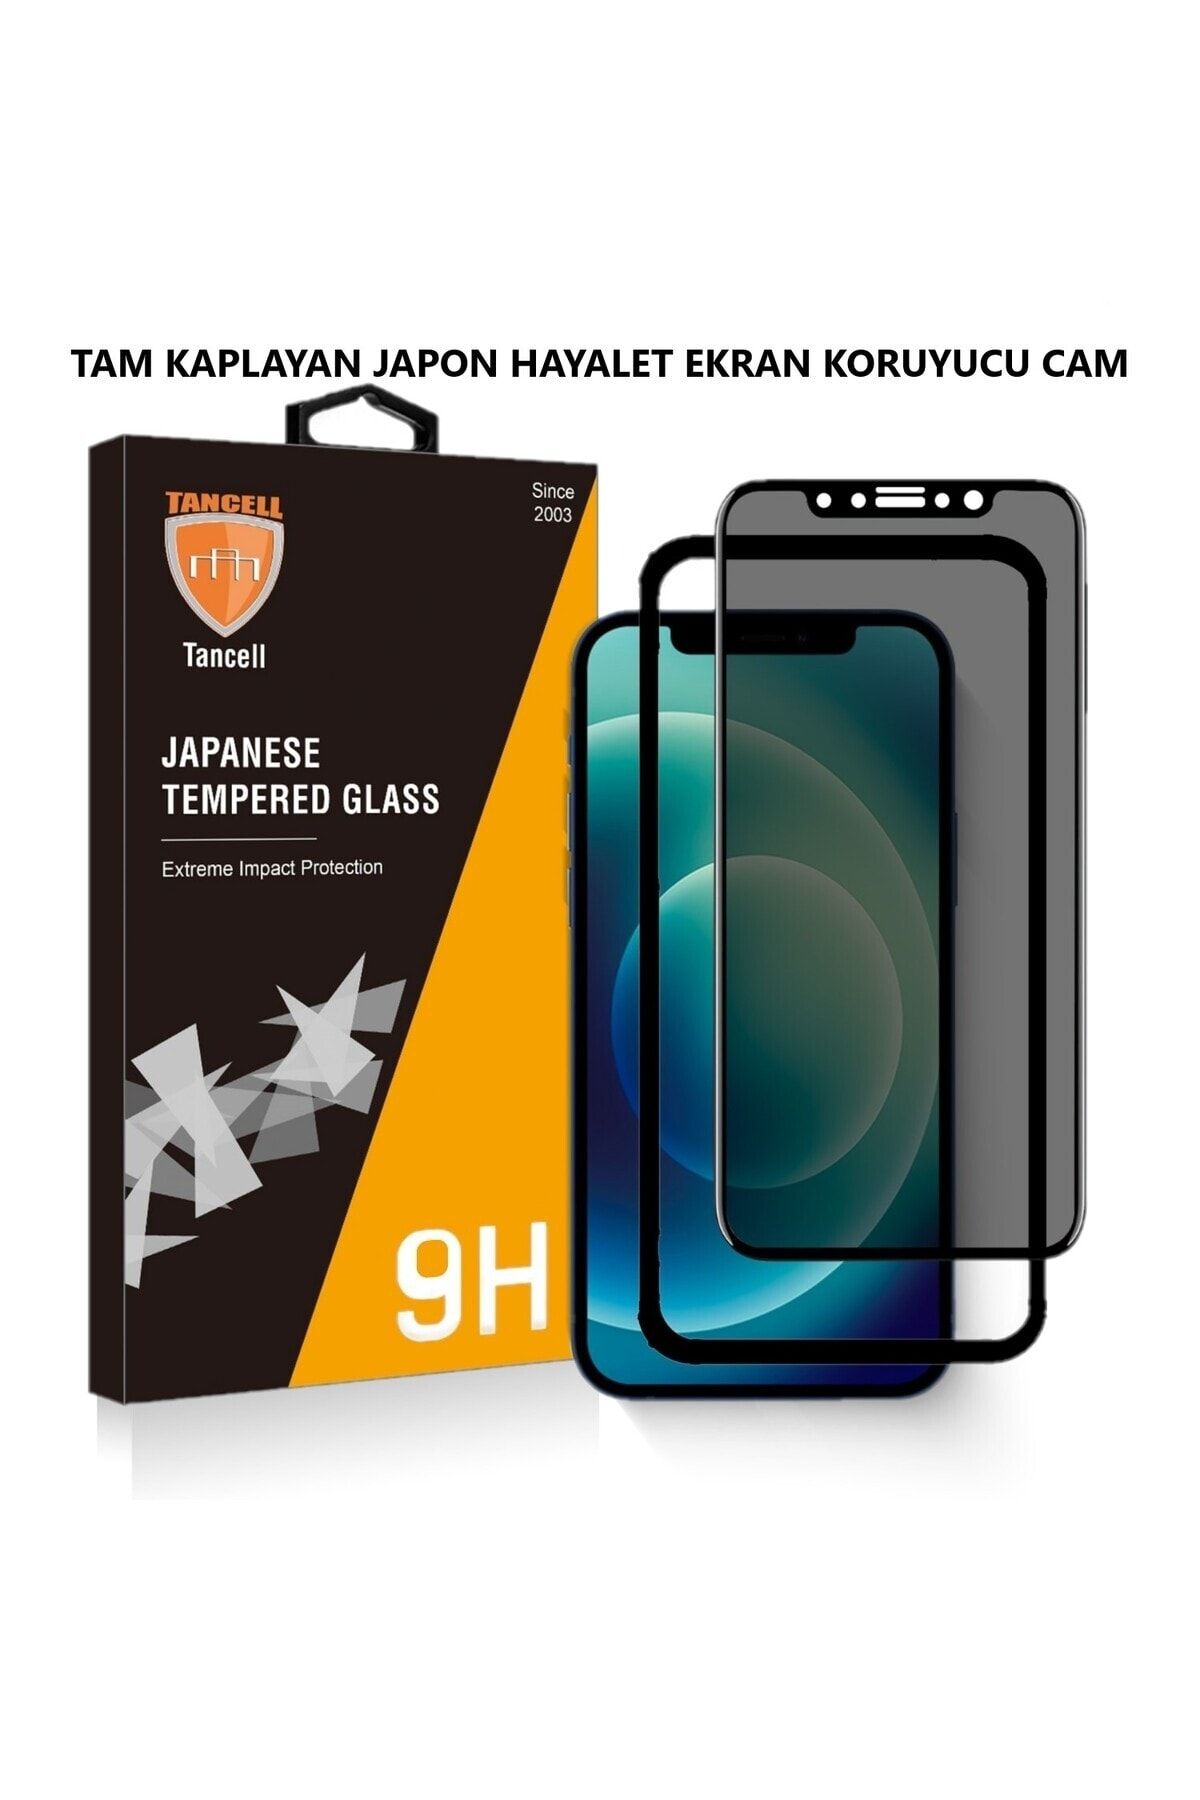 TANCELL İphone 12/12 Pro Uyumlu Hayalet Ekran Koruyucu Tam Kaplayan Japon Kırılmaz Cam 6,1 Inc (2 ADET)